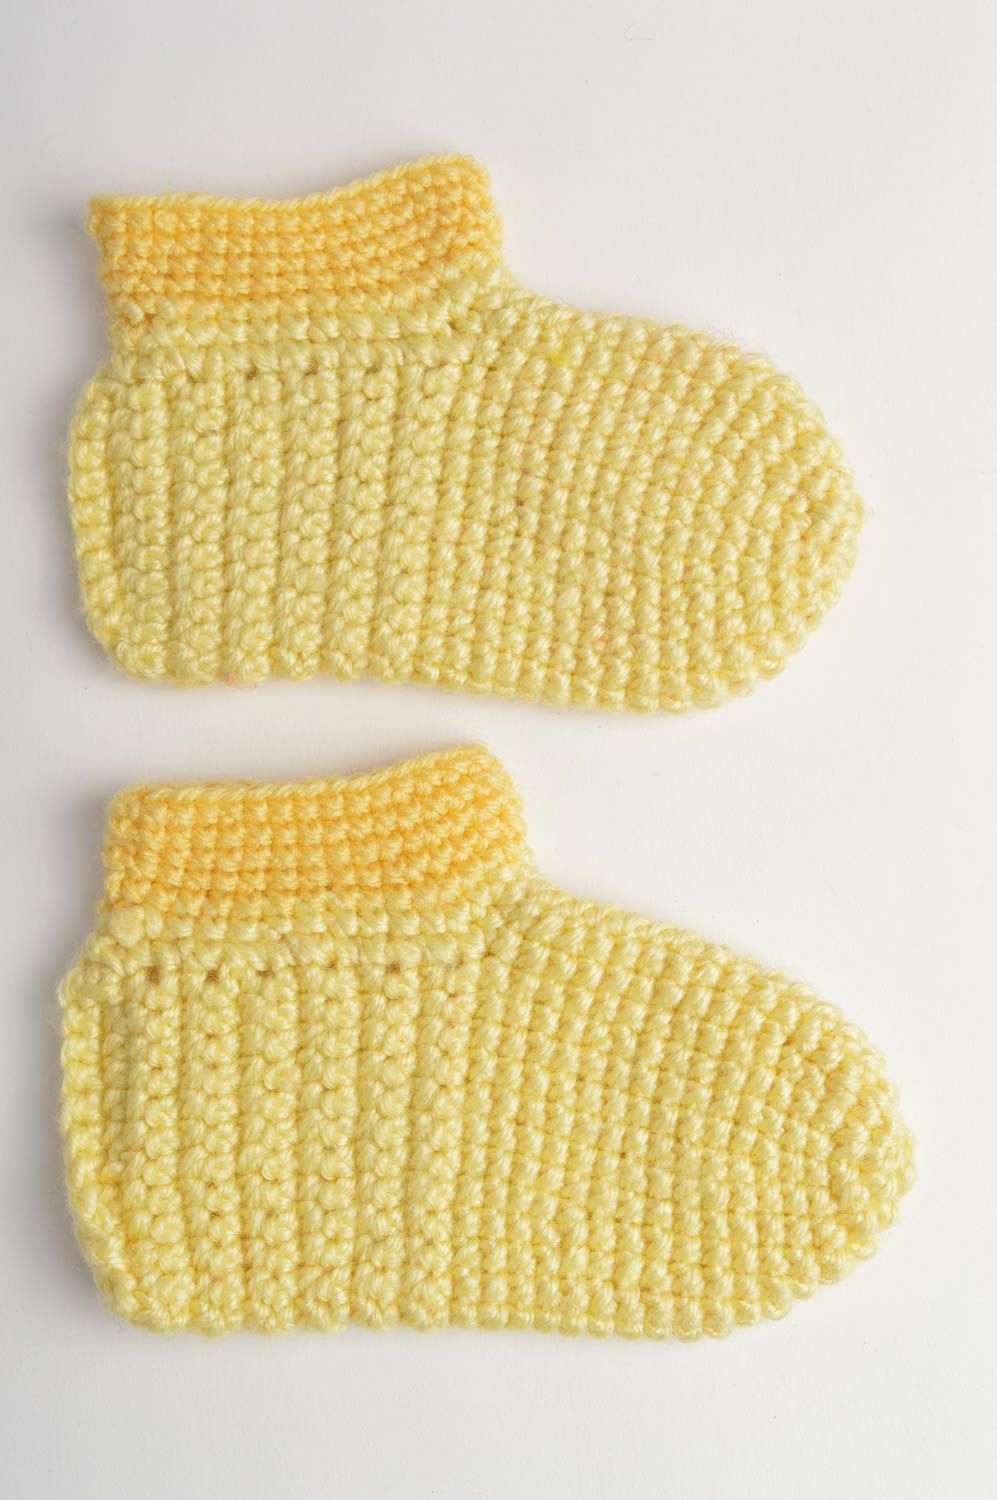 Пинетки для младенцев желтые красивые маленькие вязаные крючком ручной работы фото 3